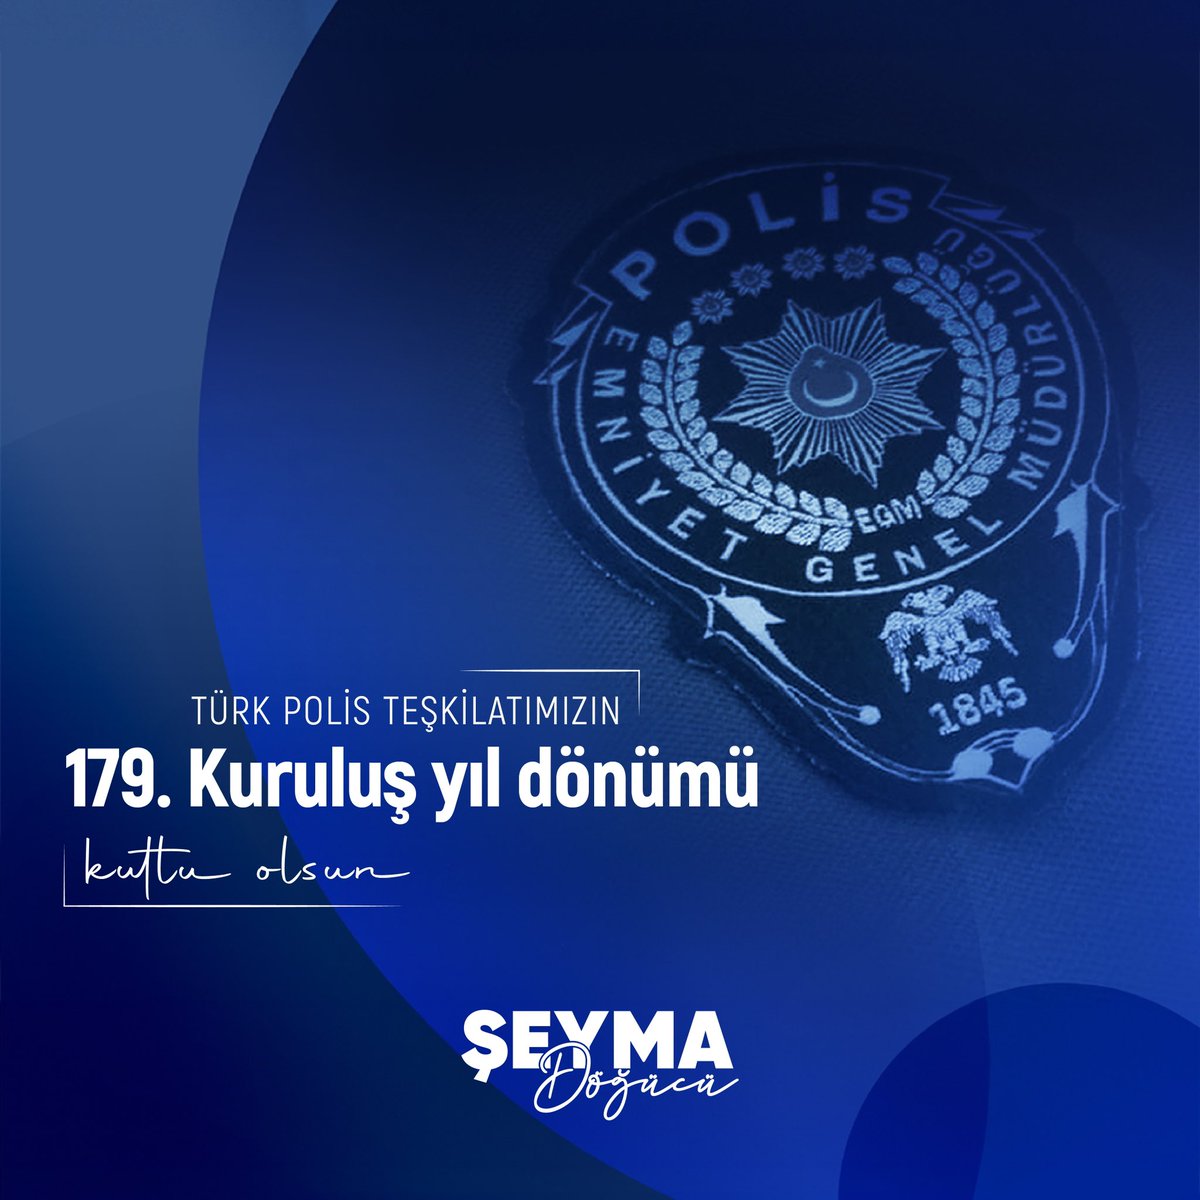 Türk Polis Teşkilatı’mızın 179. kuruluş yıl dönümü kutlu olsun.